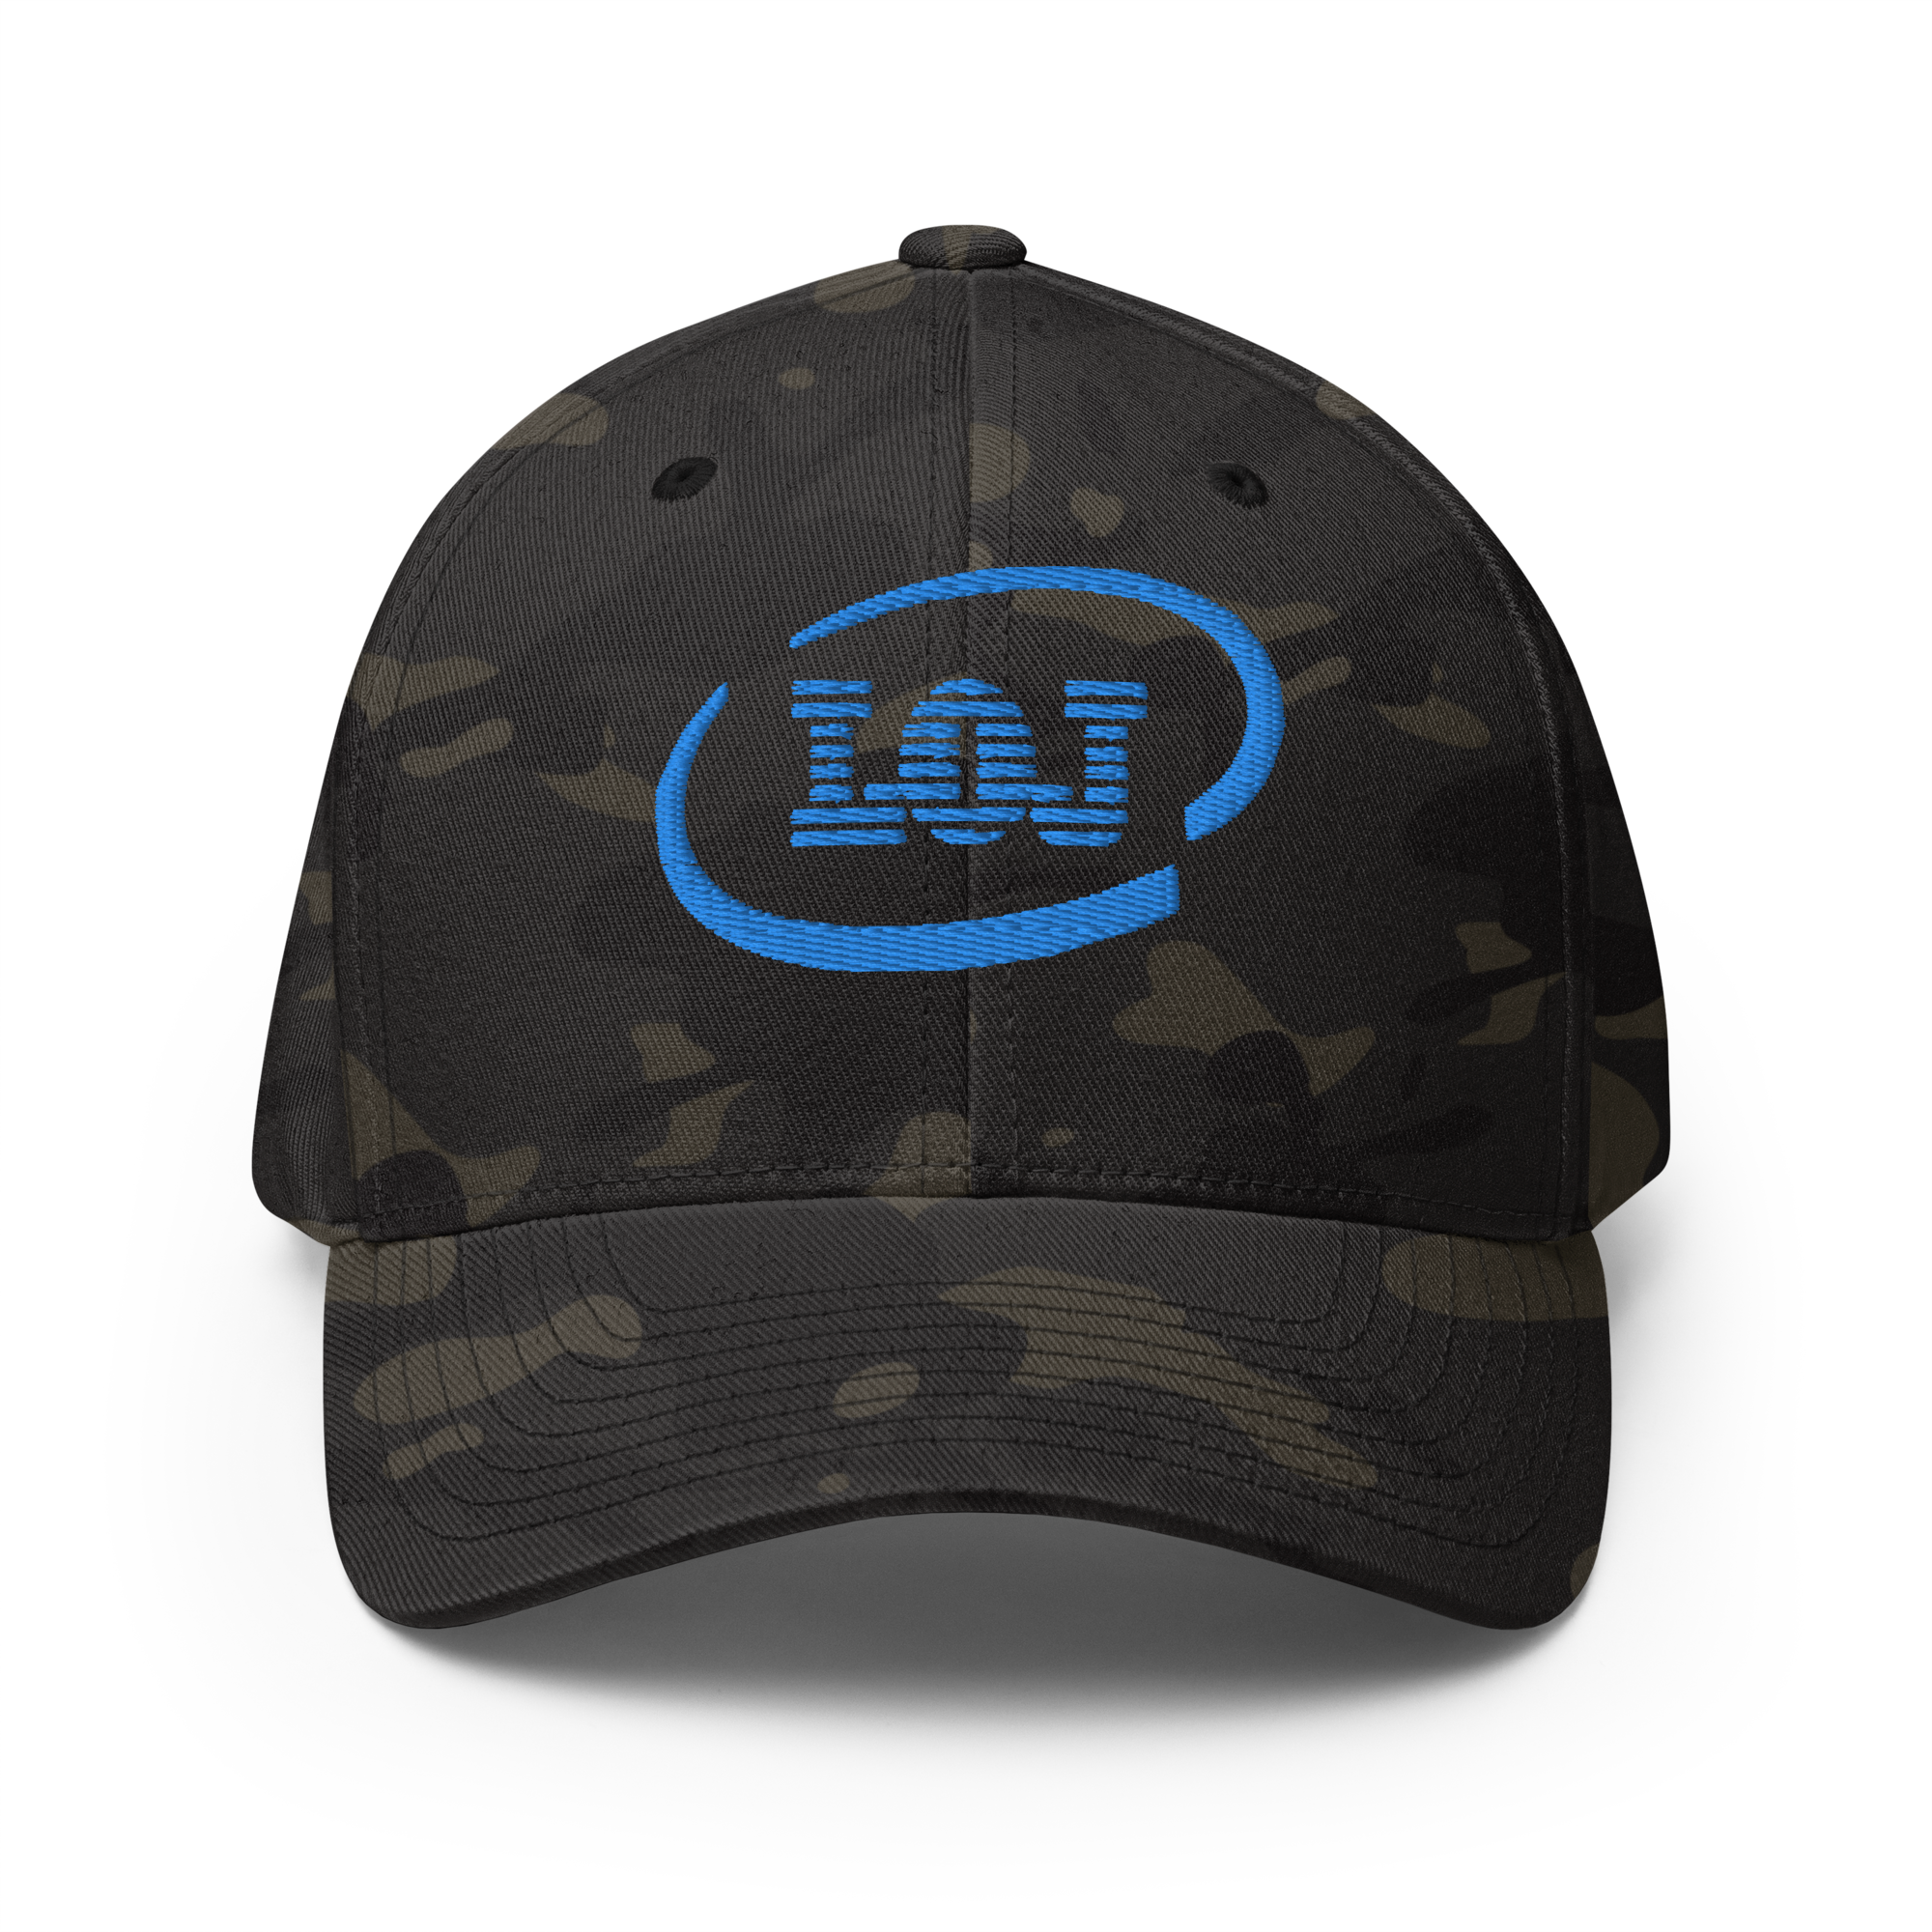 LOJ IBM Wordplay Structured Twill Cap